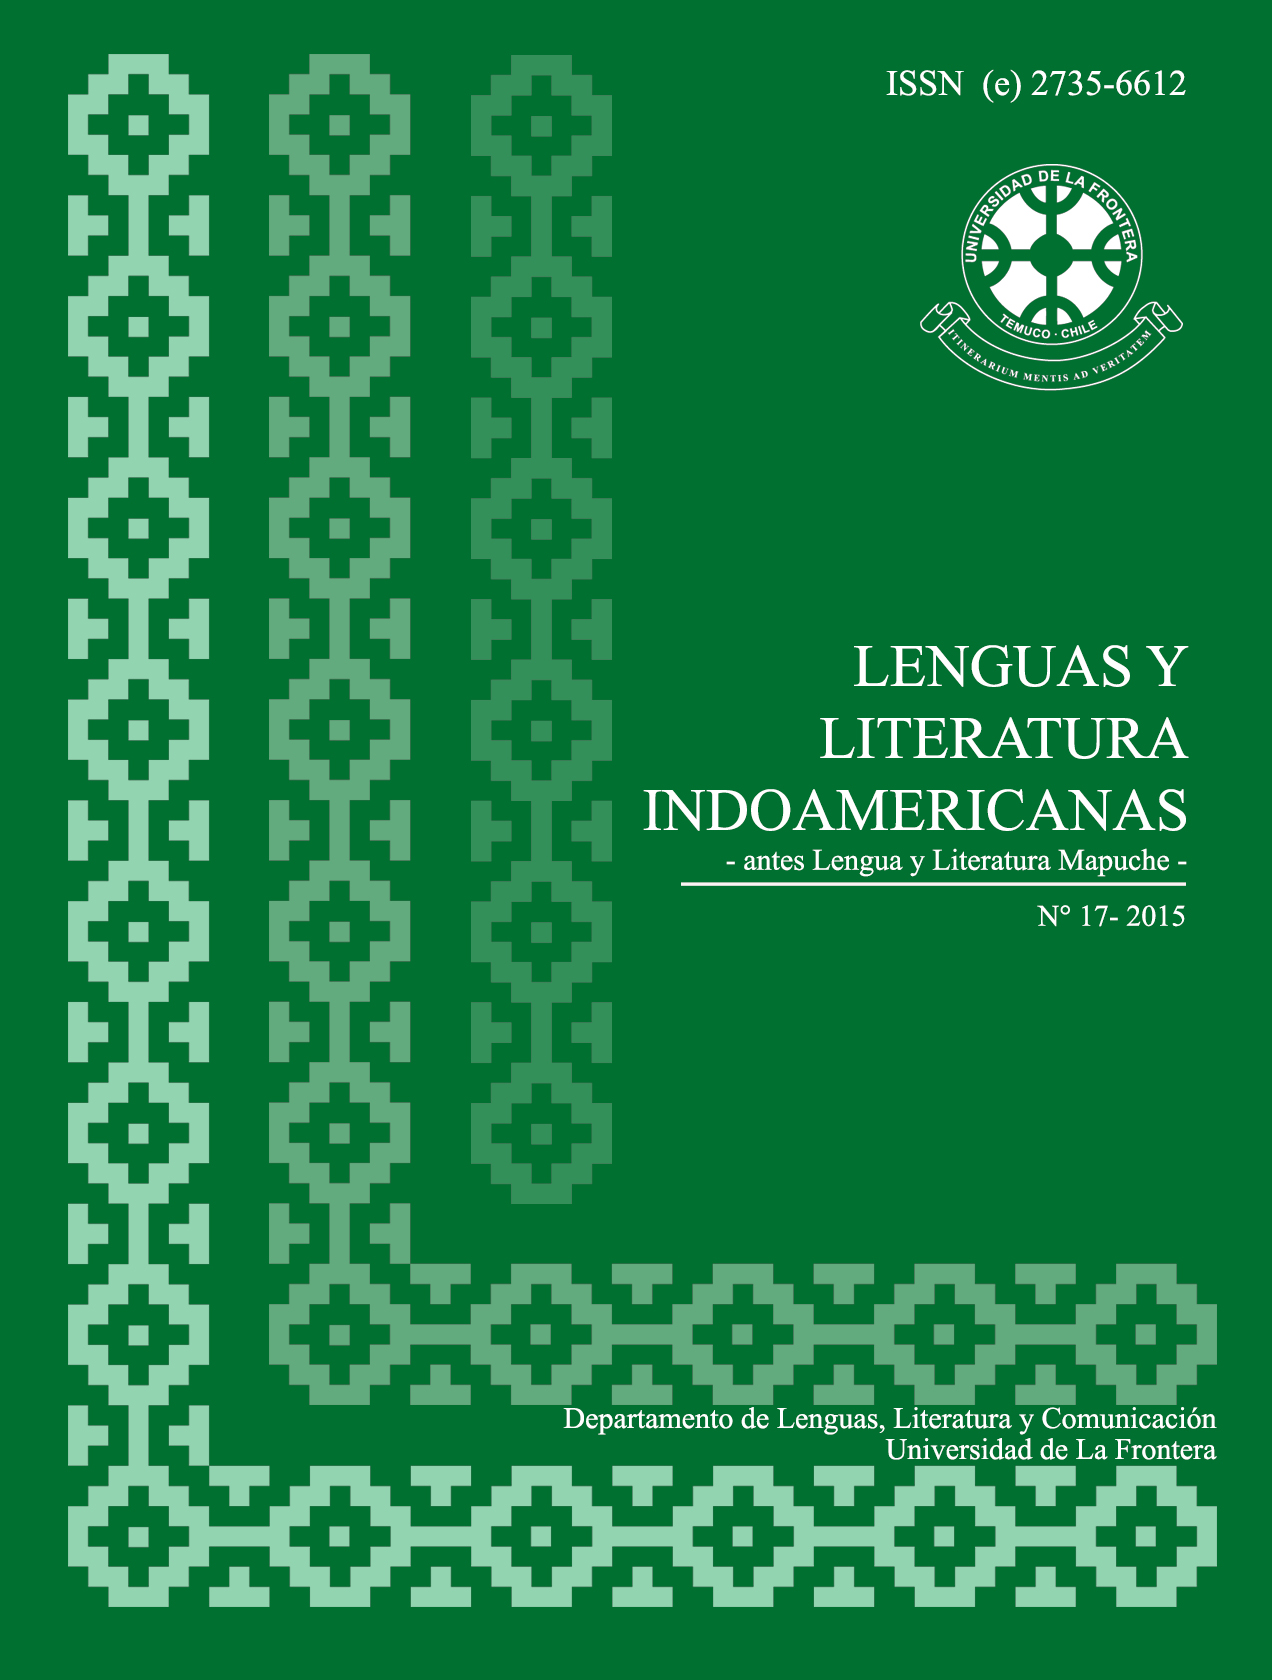 					View Vol. 17 No. 1 (2015): Revista de Lenguas y Literatura Indoamericanas (RLLI)
				